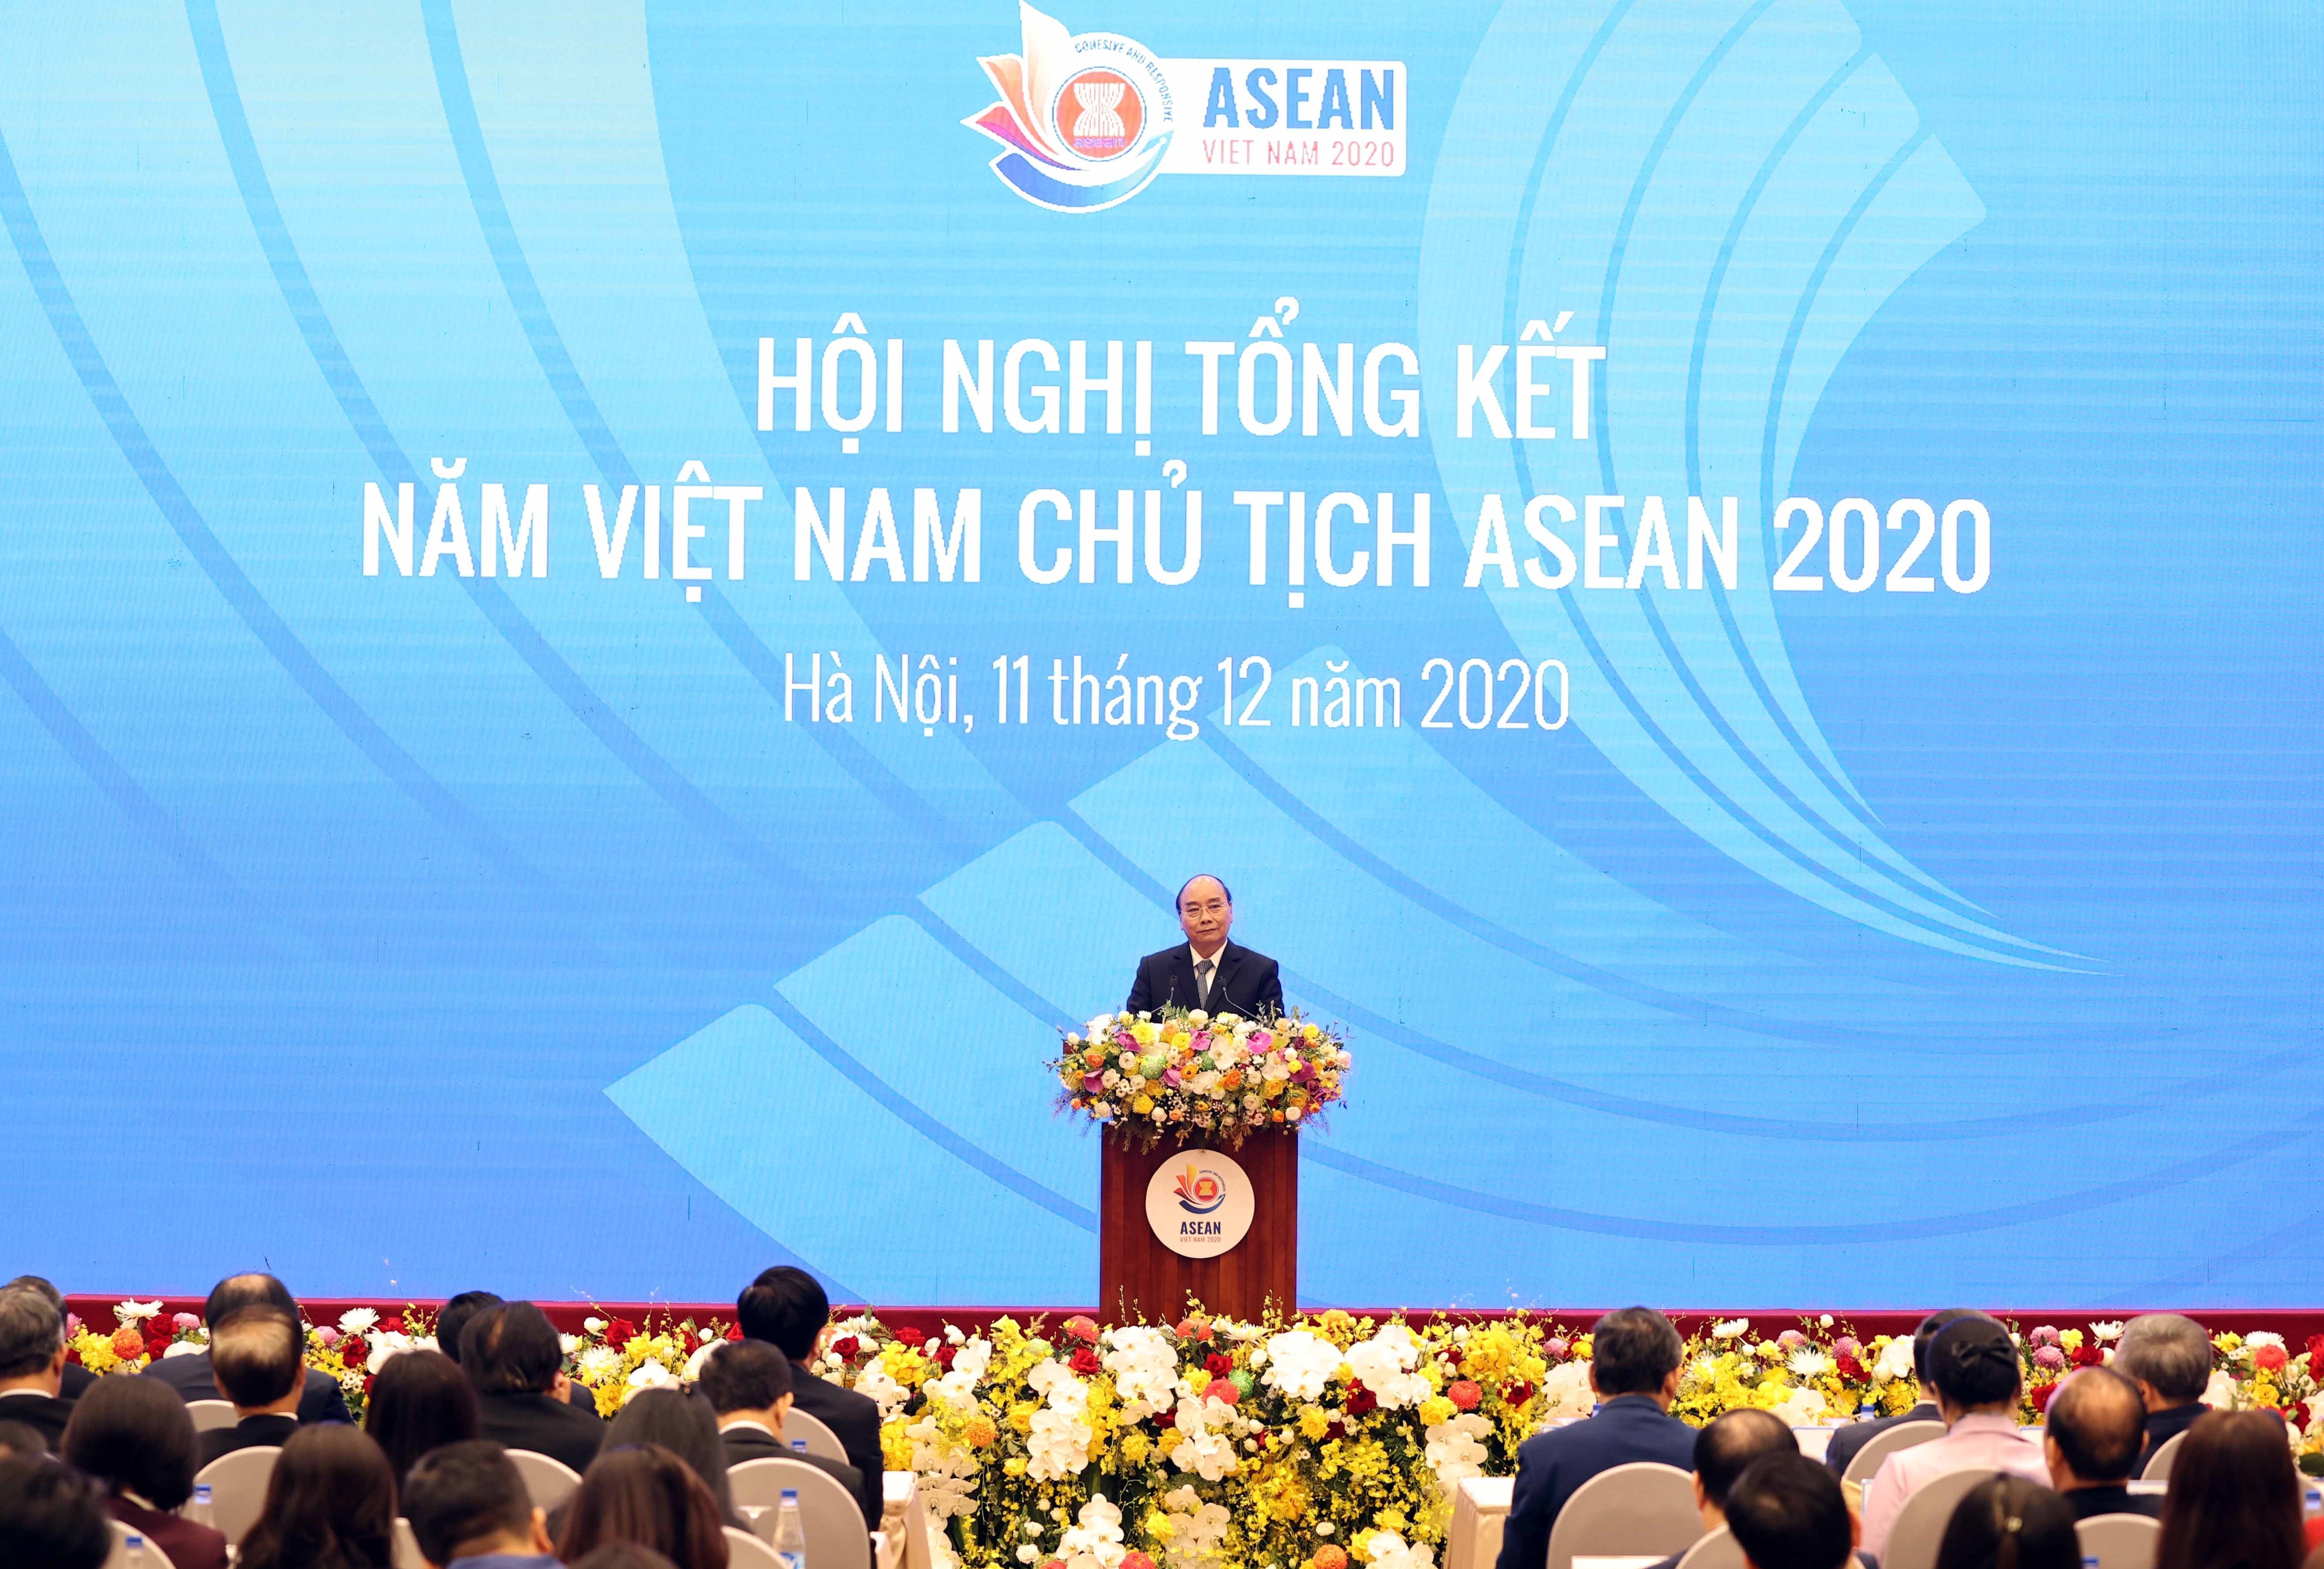 Thủ tướng Nguyễn Xuân Phúc, Chủ tịch ASEAN 2020 phát biểu tại Hội nghị tổng kết năm Việt Nam Chủ tịch ASEAN 2020. (Ảnh: Thống Nhất/ TTXVN)